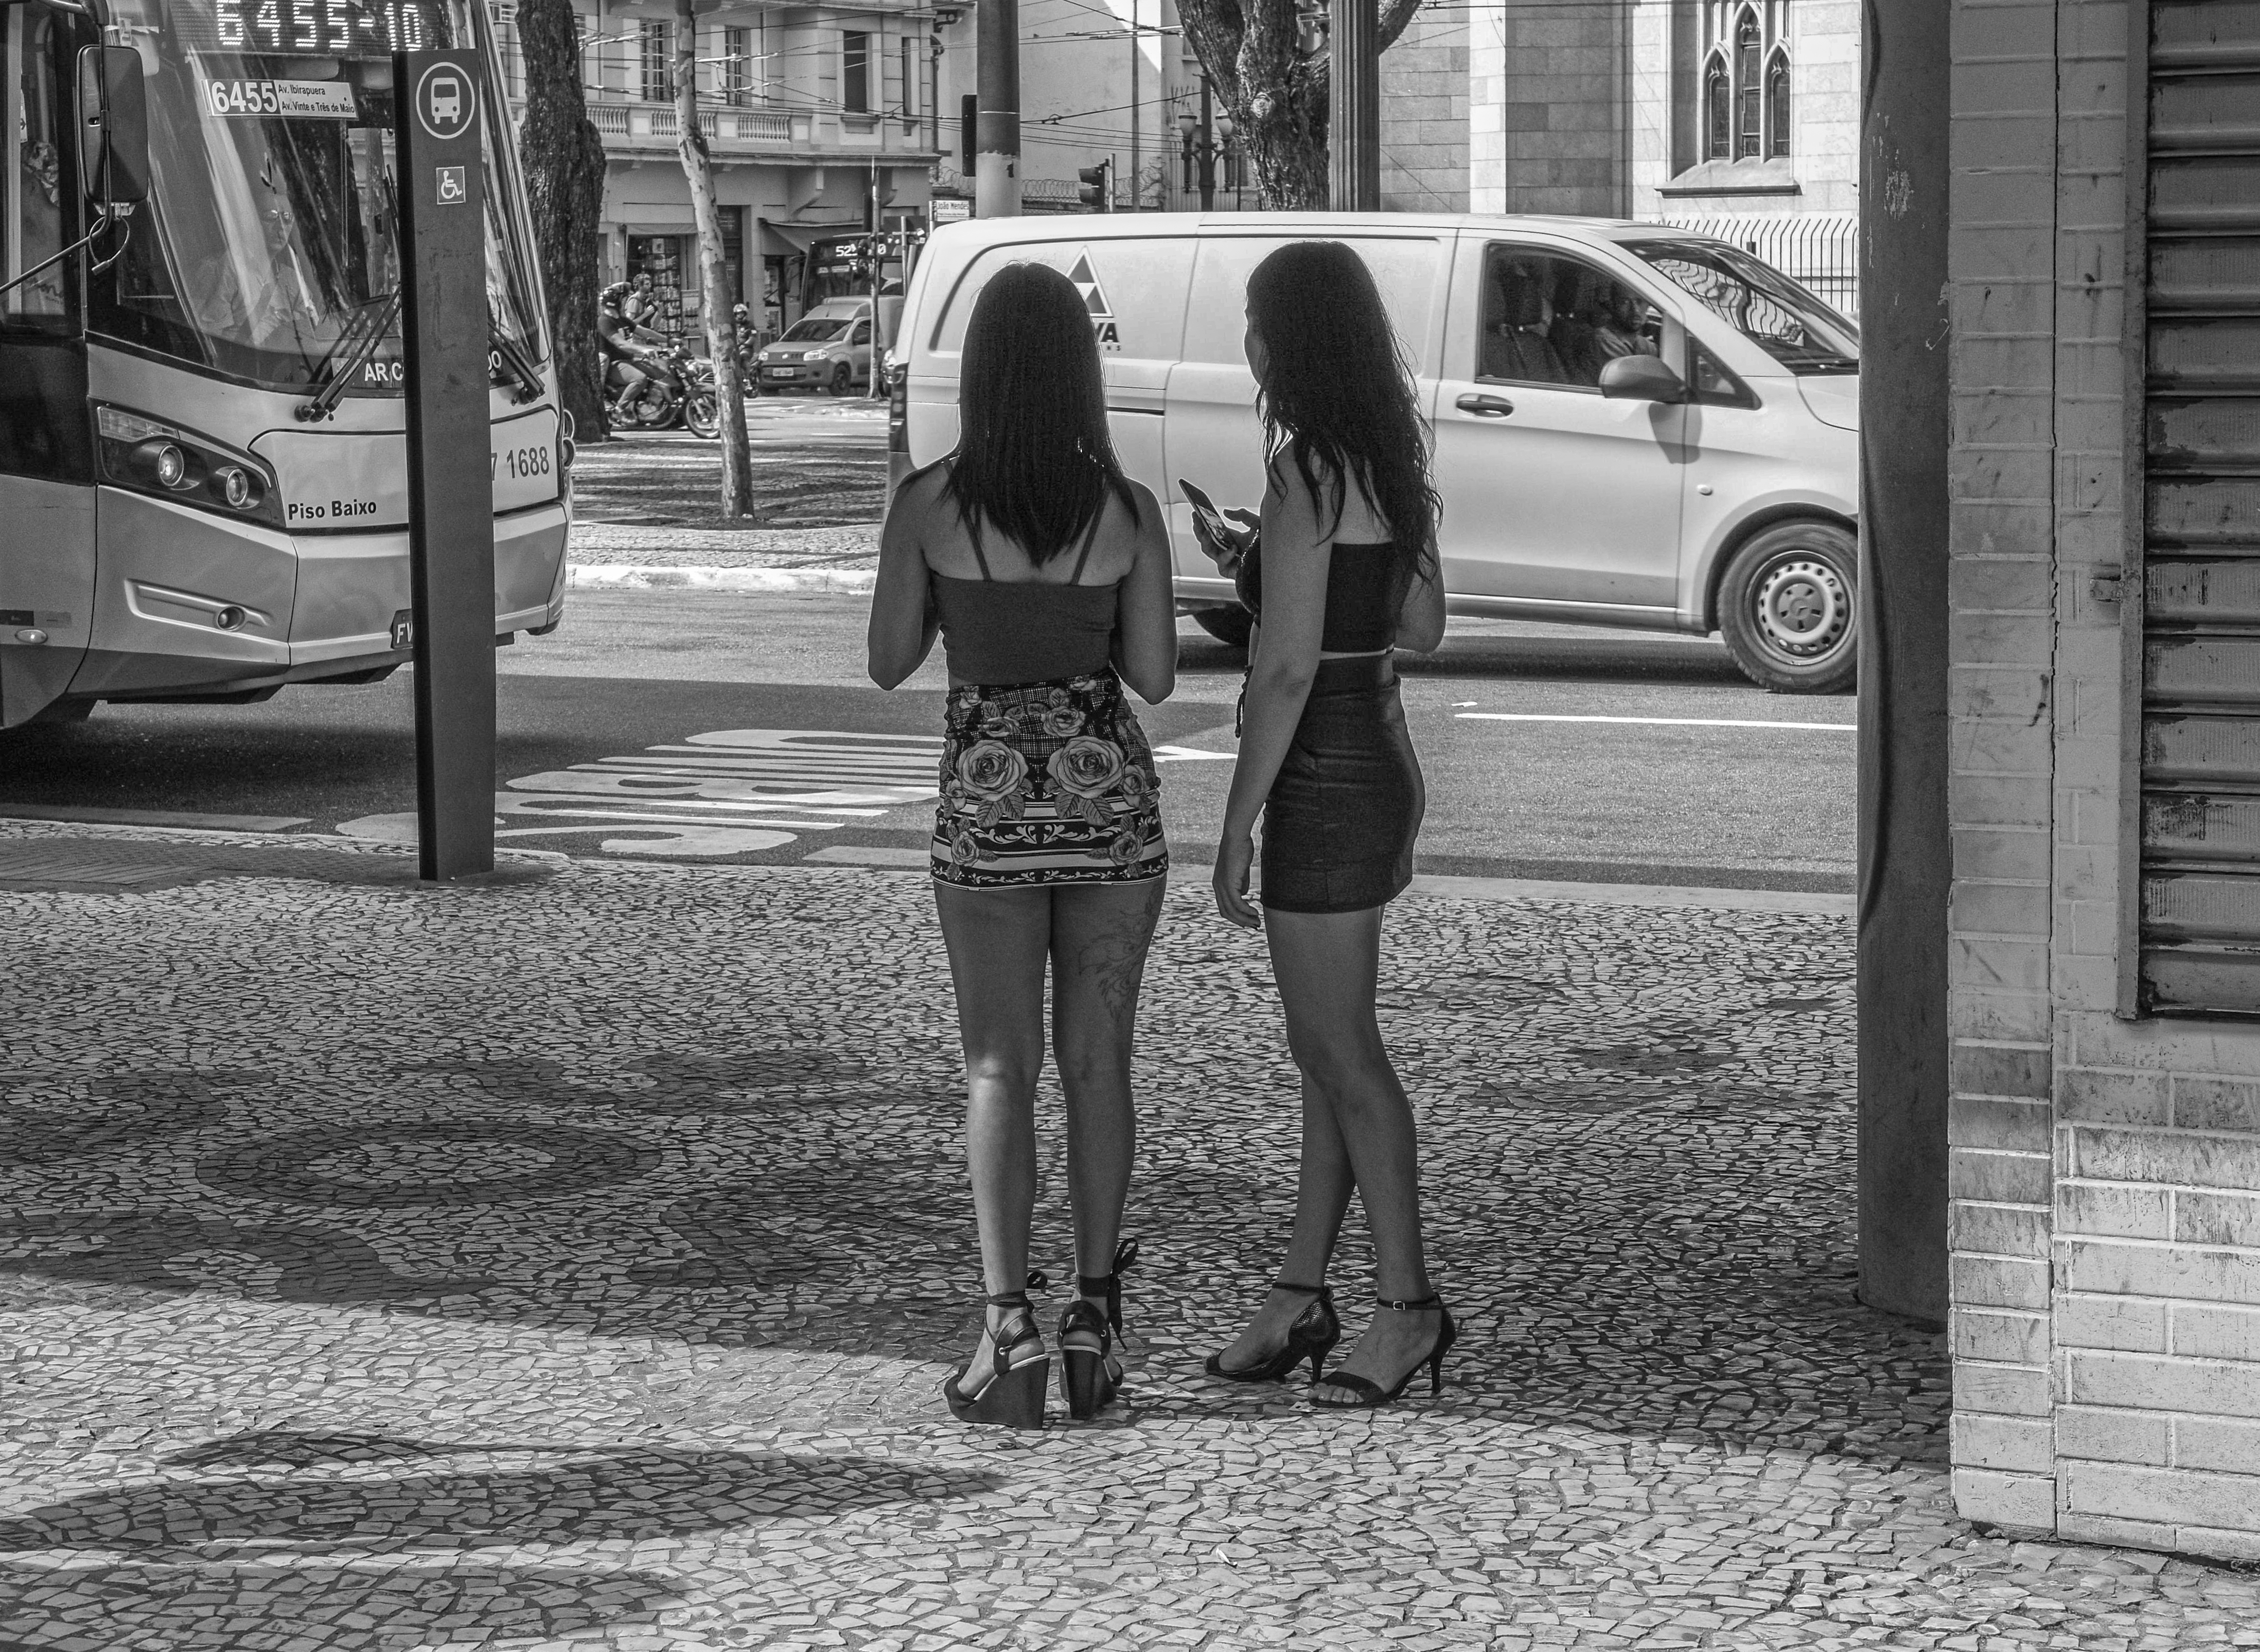 Prostitutas e clientes apanhados em casa de Guimarães